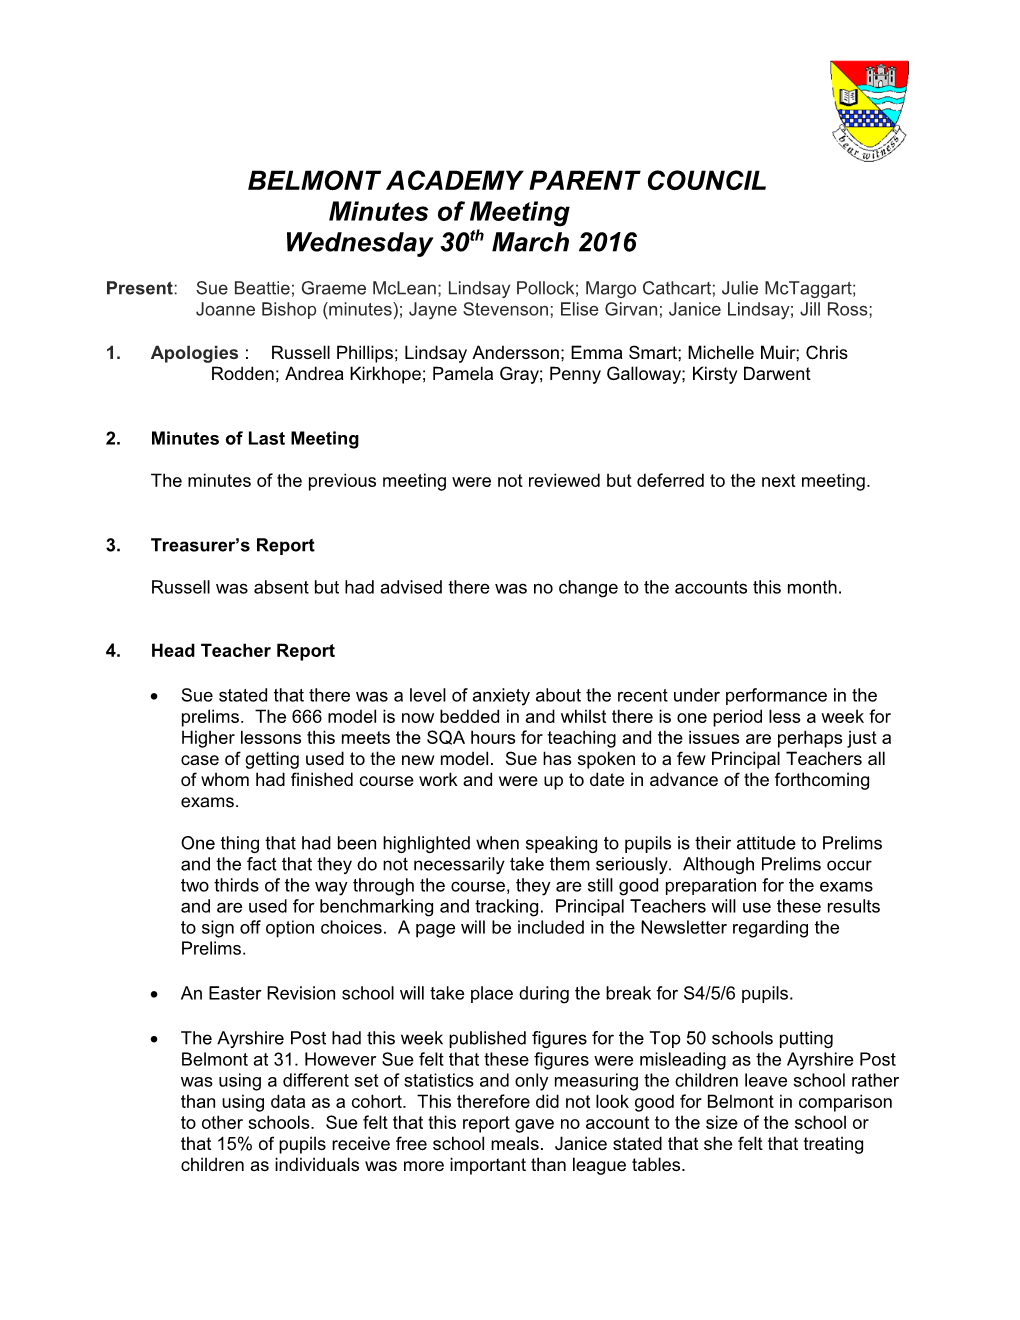 Belmont Academy Parent Council